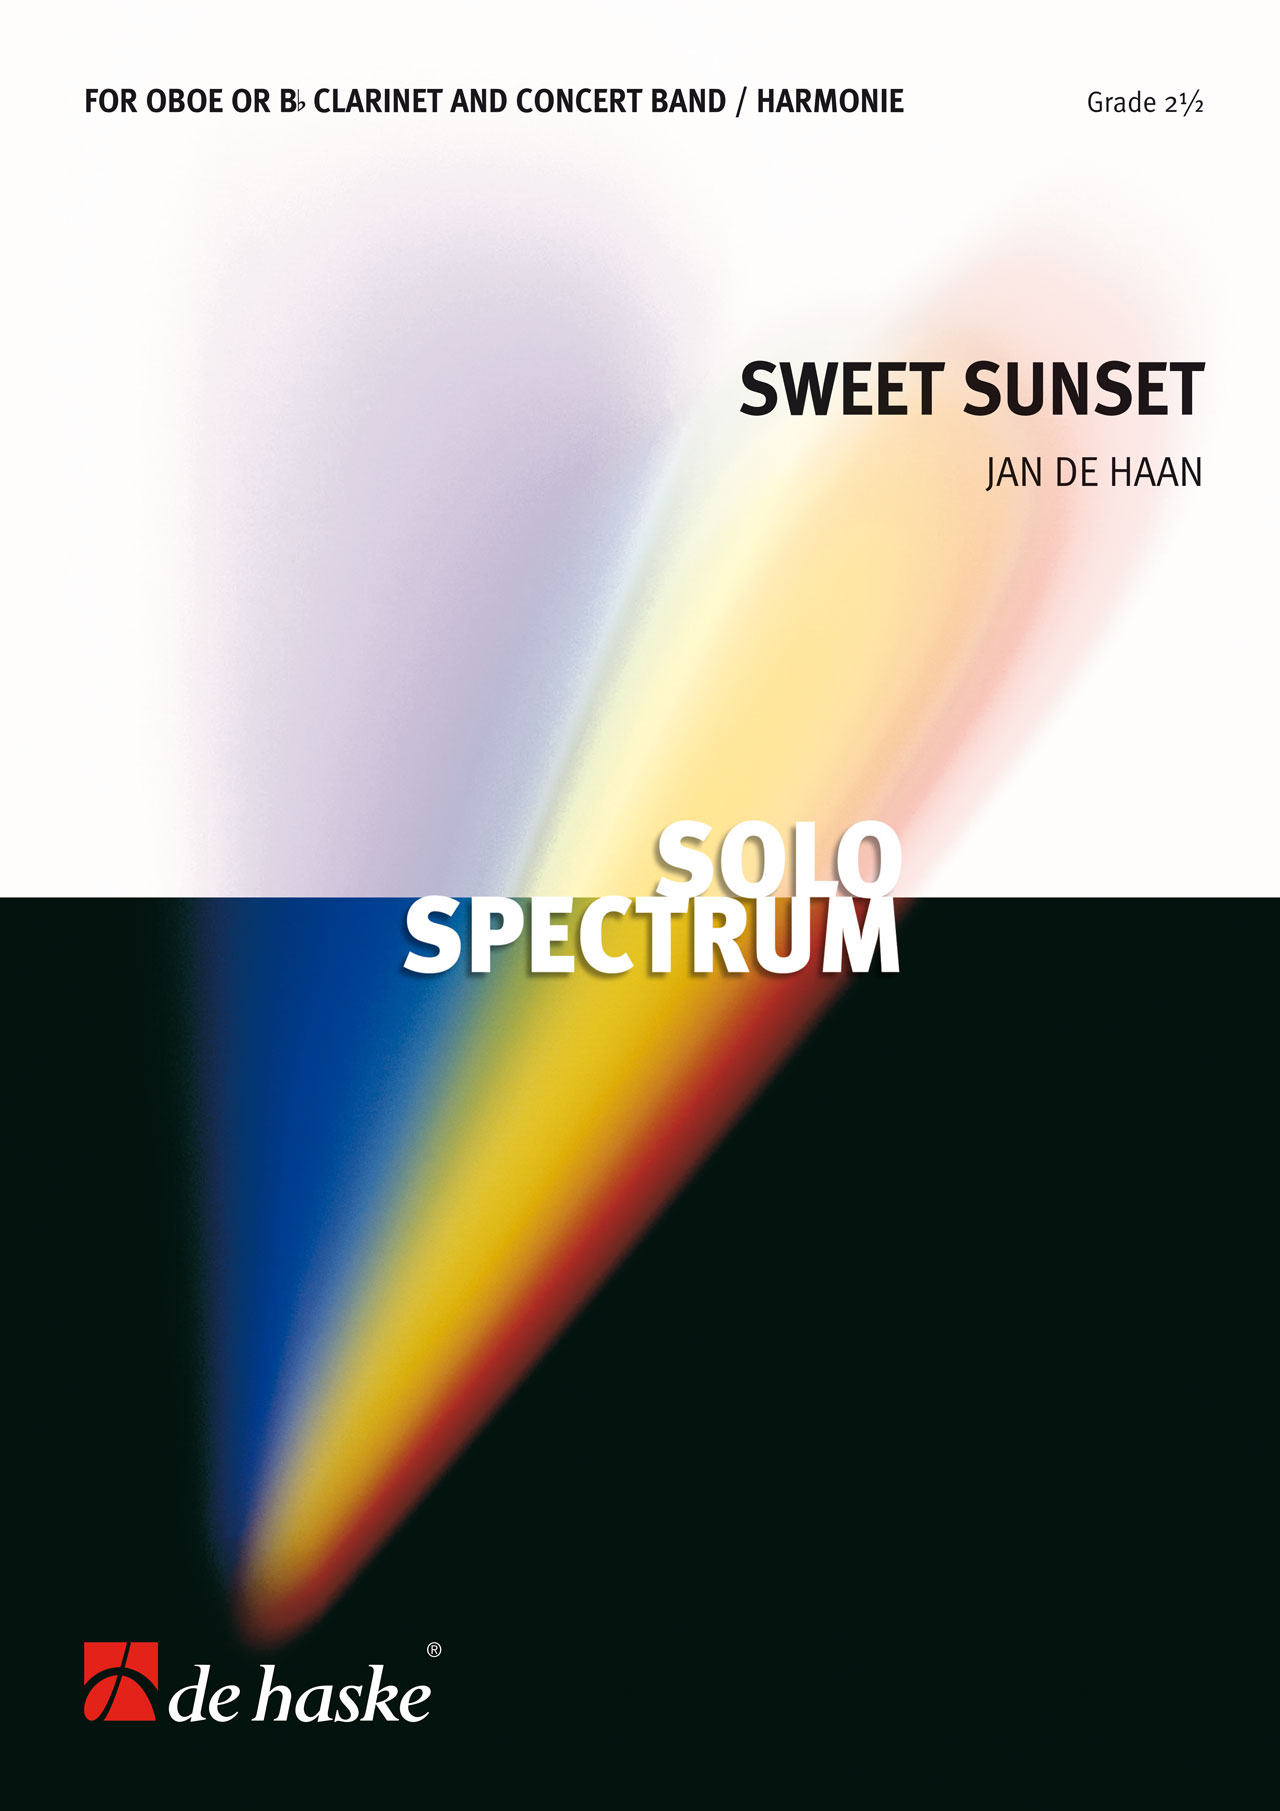 Jan de Haan: Sweet Sunset: Concert Band: Score